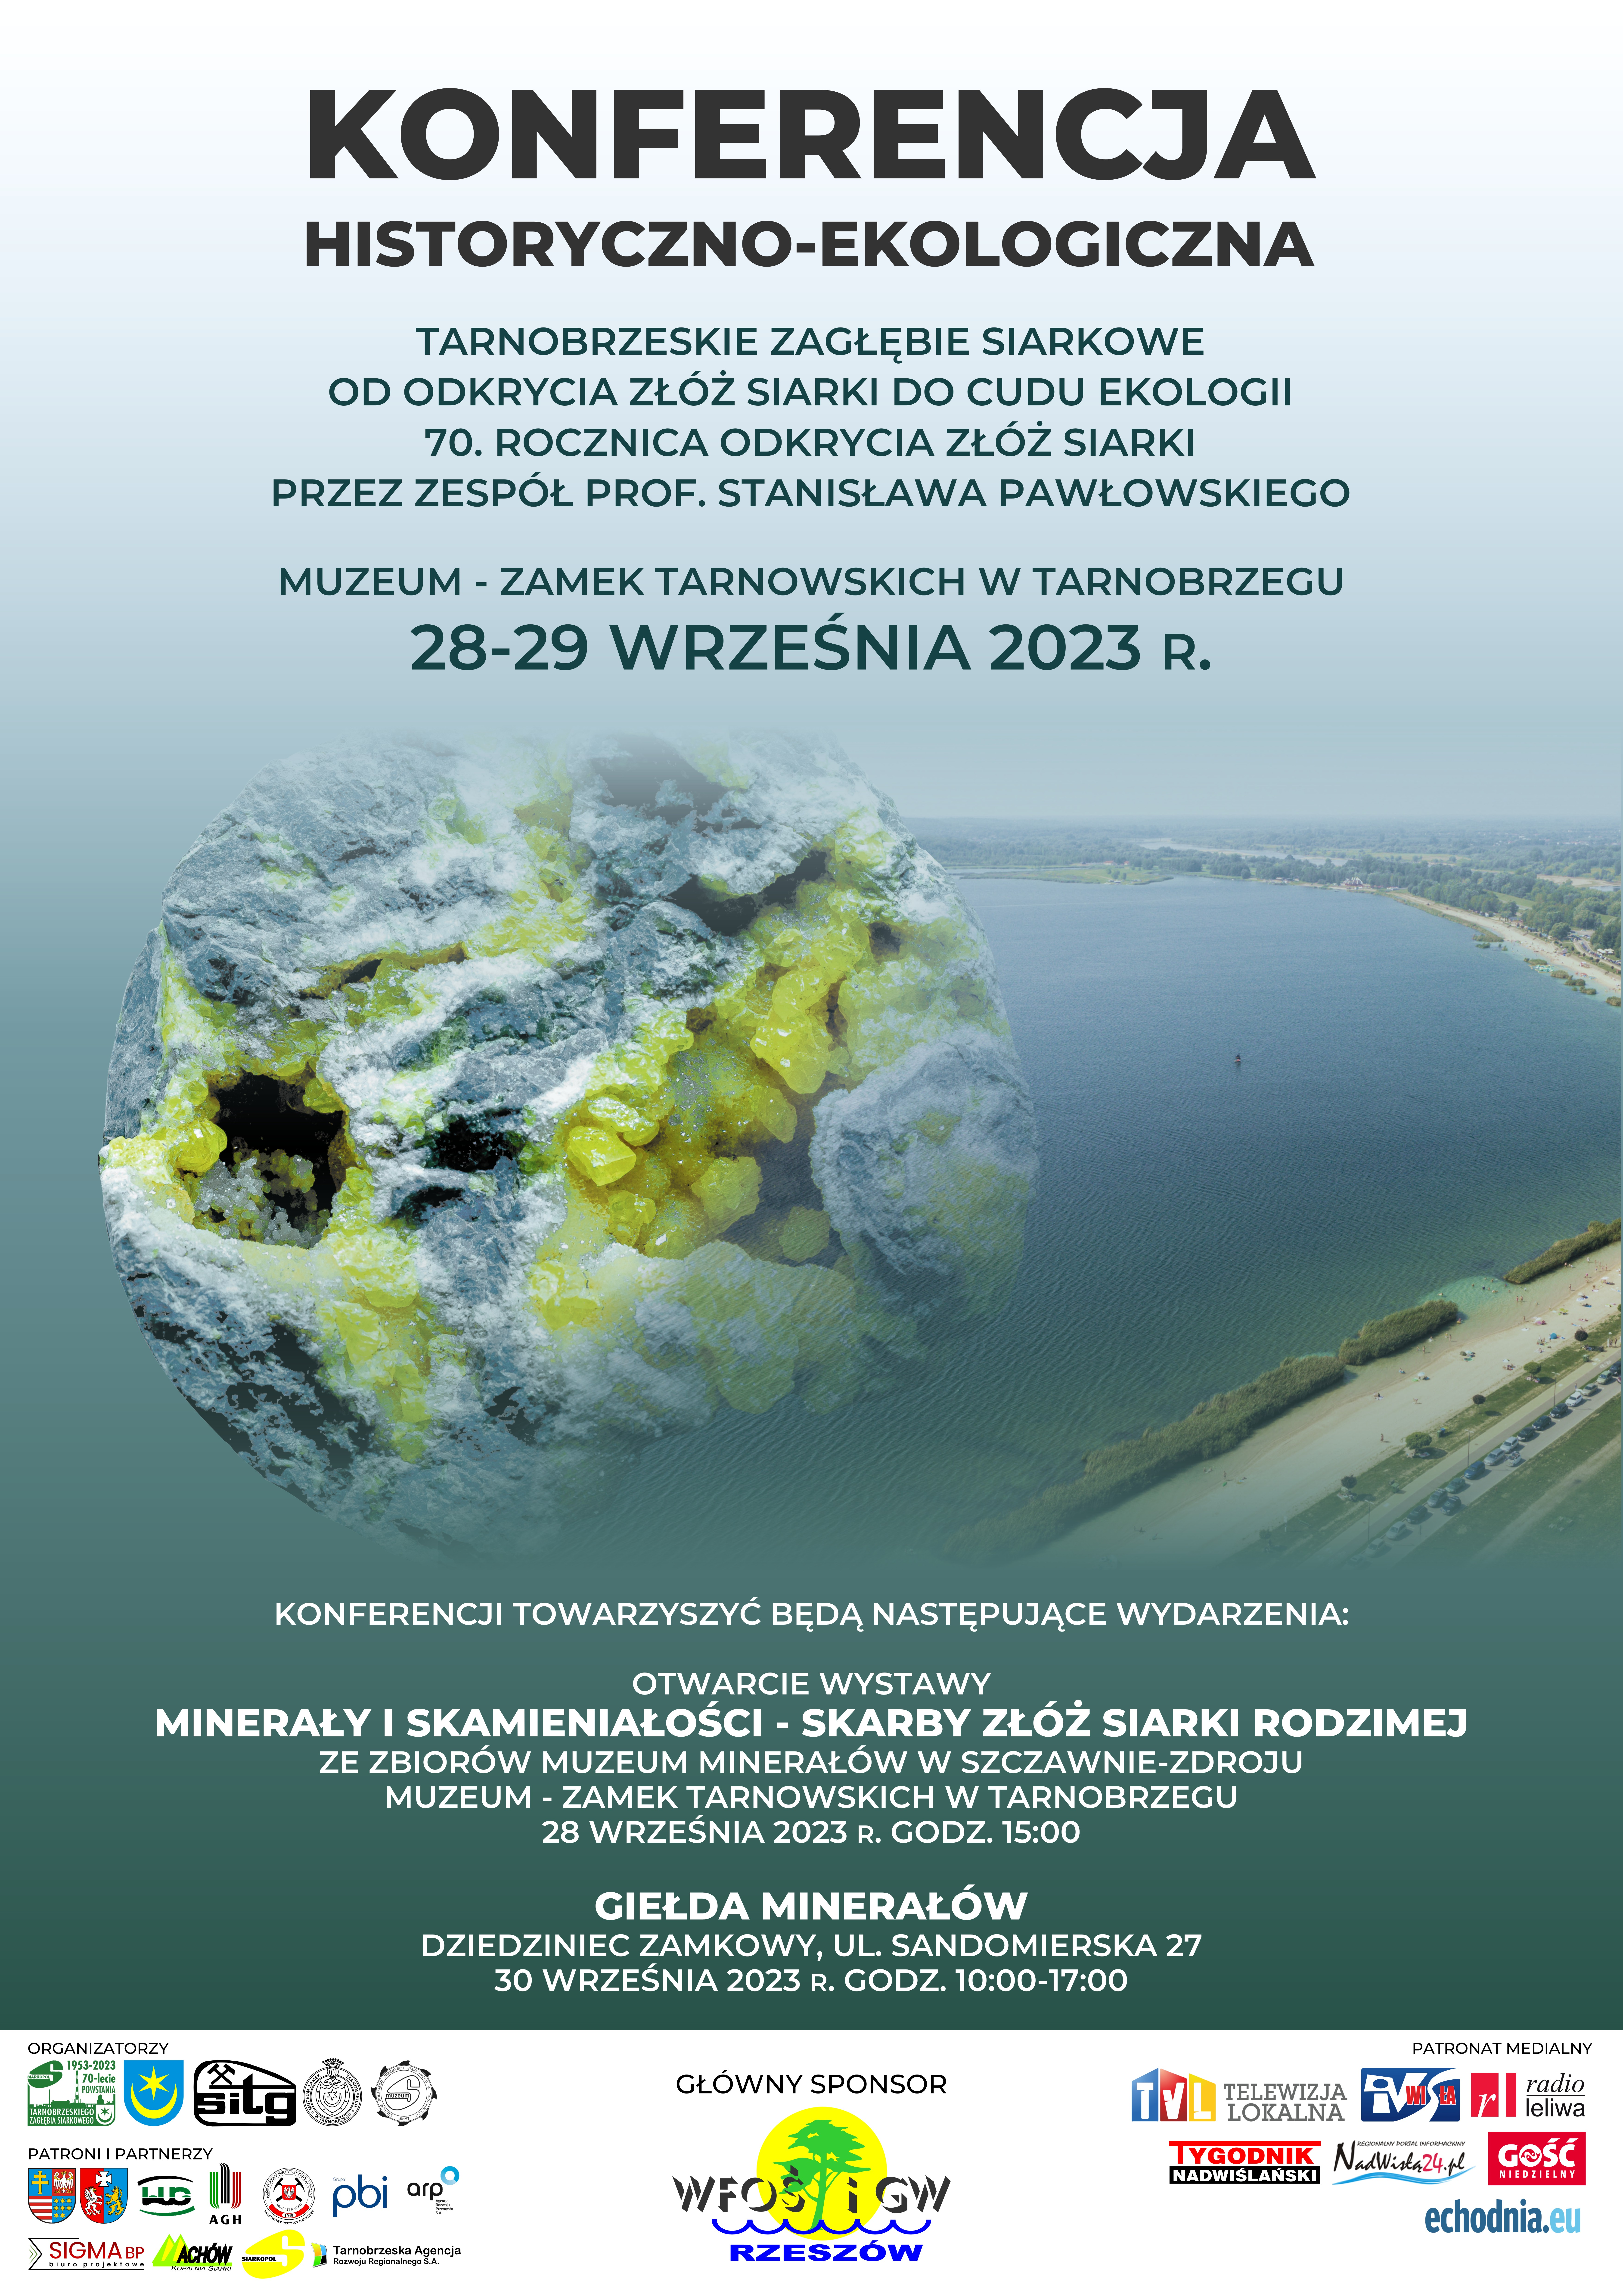 70-lecie odkrycia złóż siarki pod Tarnobrzegiem – Konferencja historyczno-ekologiczna